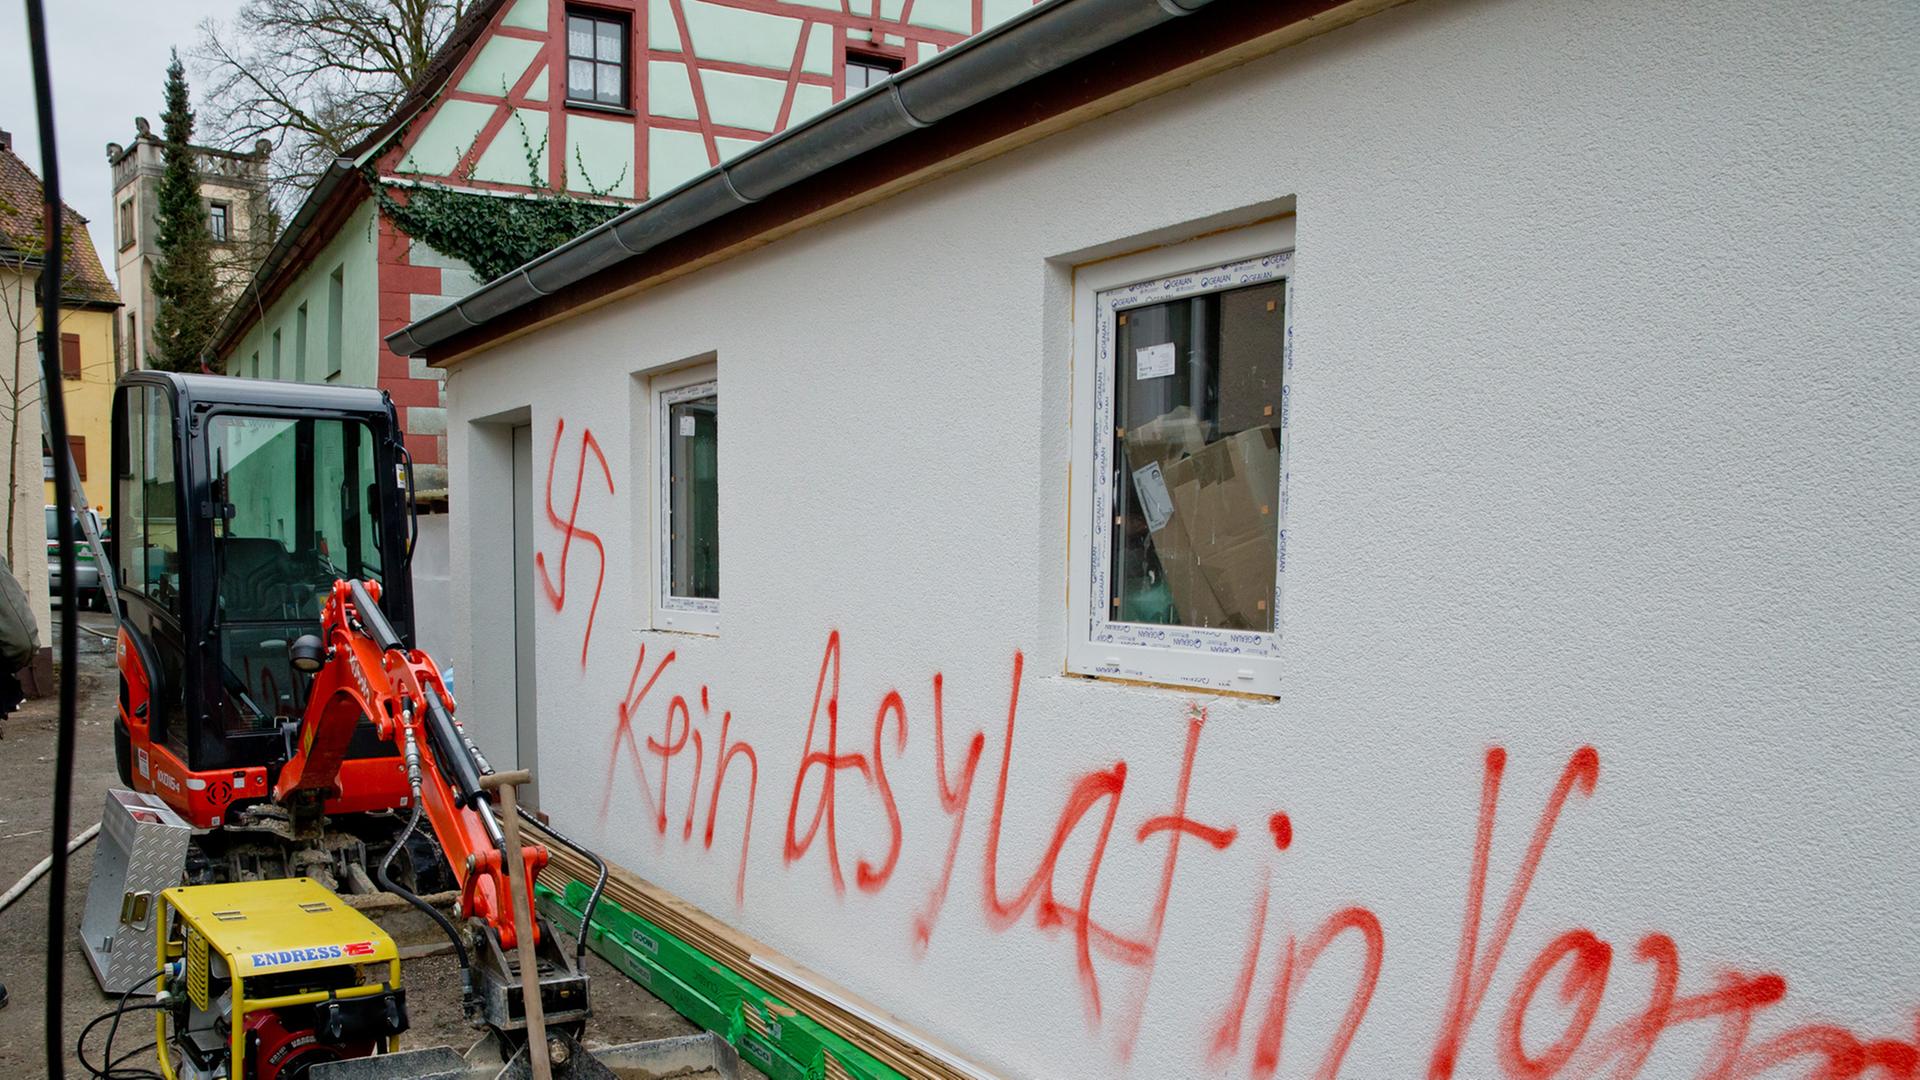 Eine frisch verputzte Hauswand mit dem in rot aufgesprühten Satz "Kein Asylat in Vorra" und einem Hakenkreuz.